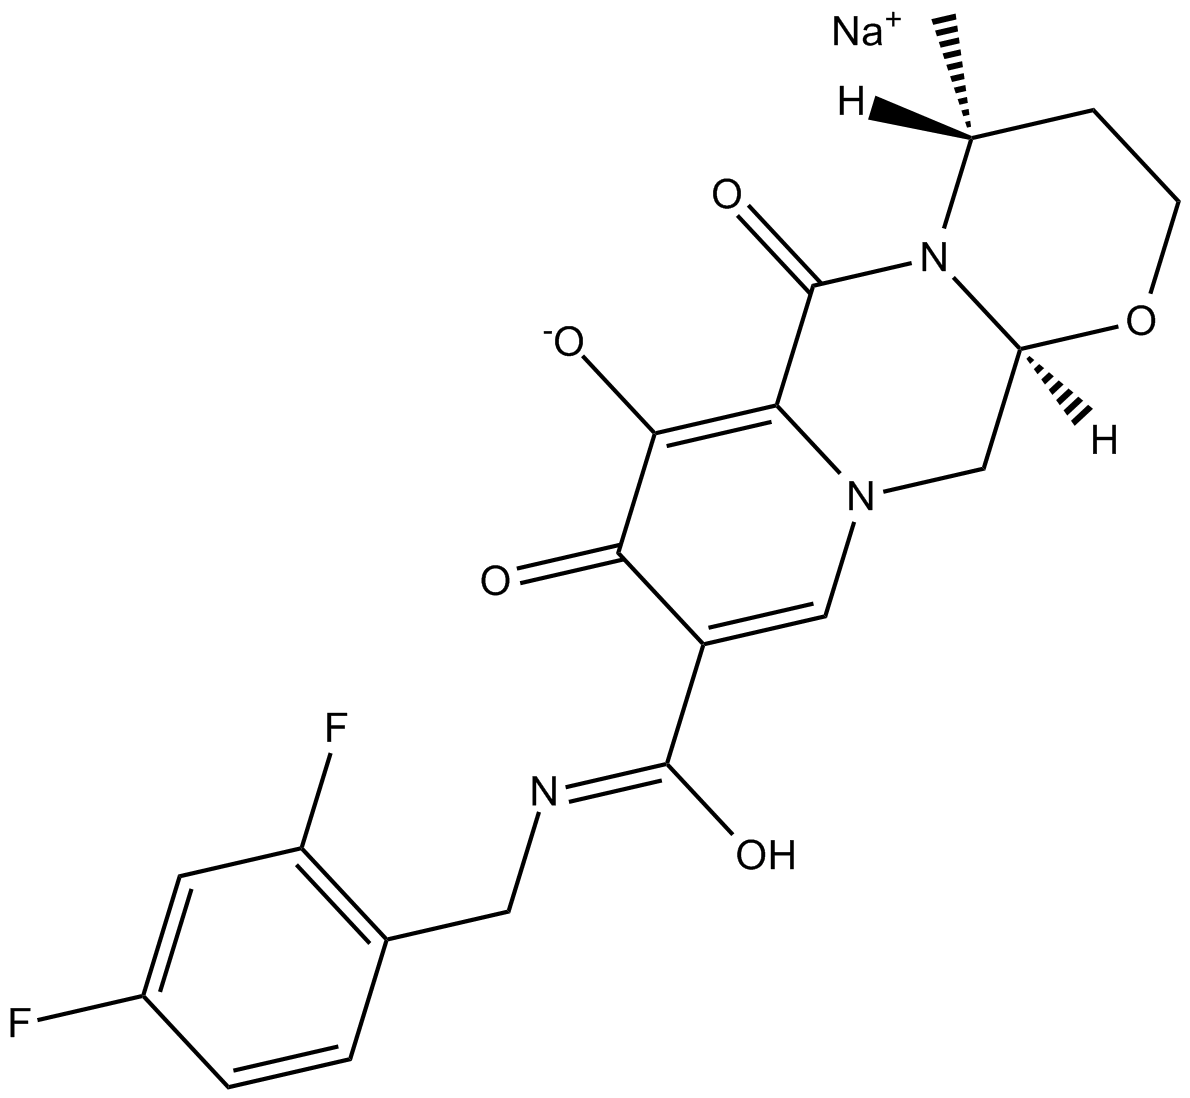 GSK1349572 sodiuM salt 化学構造